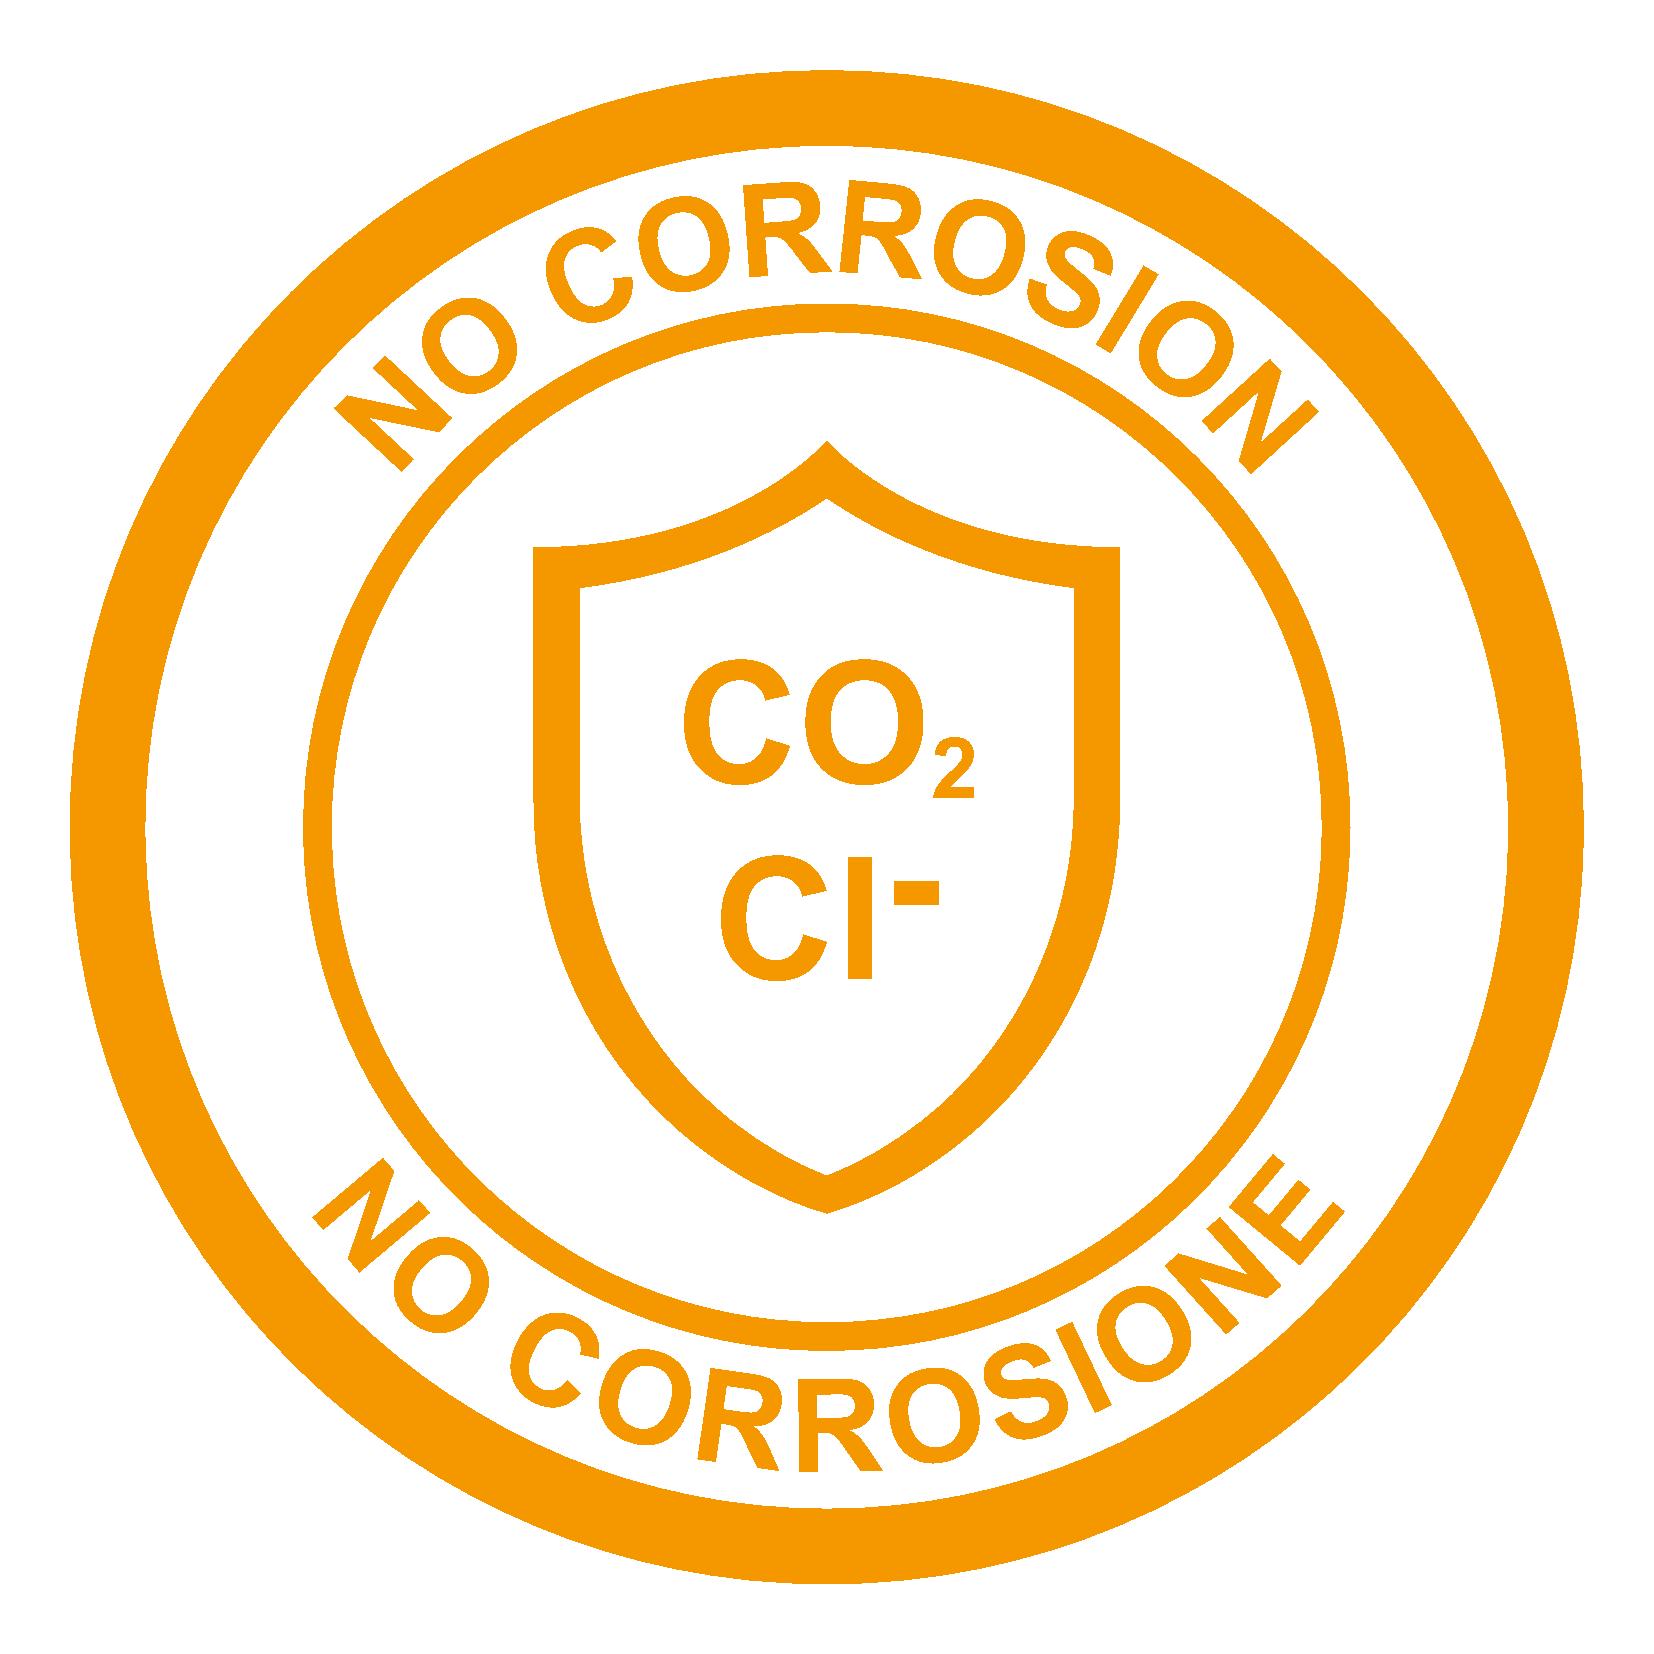 No Corrosion